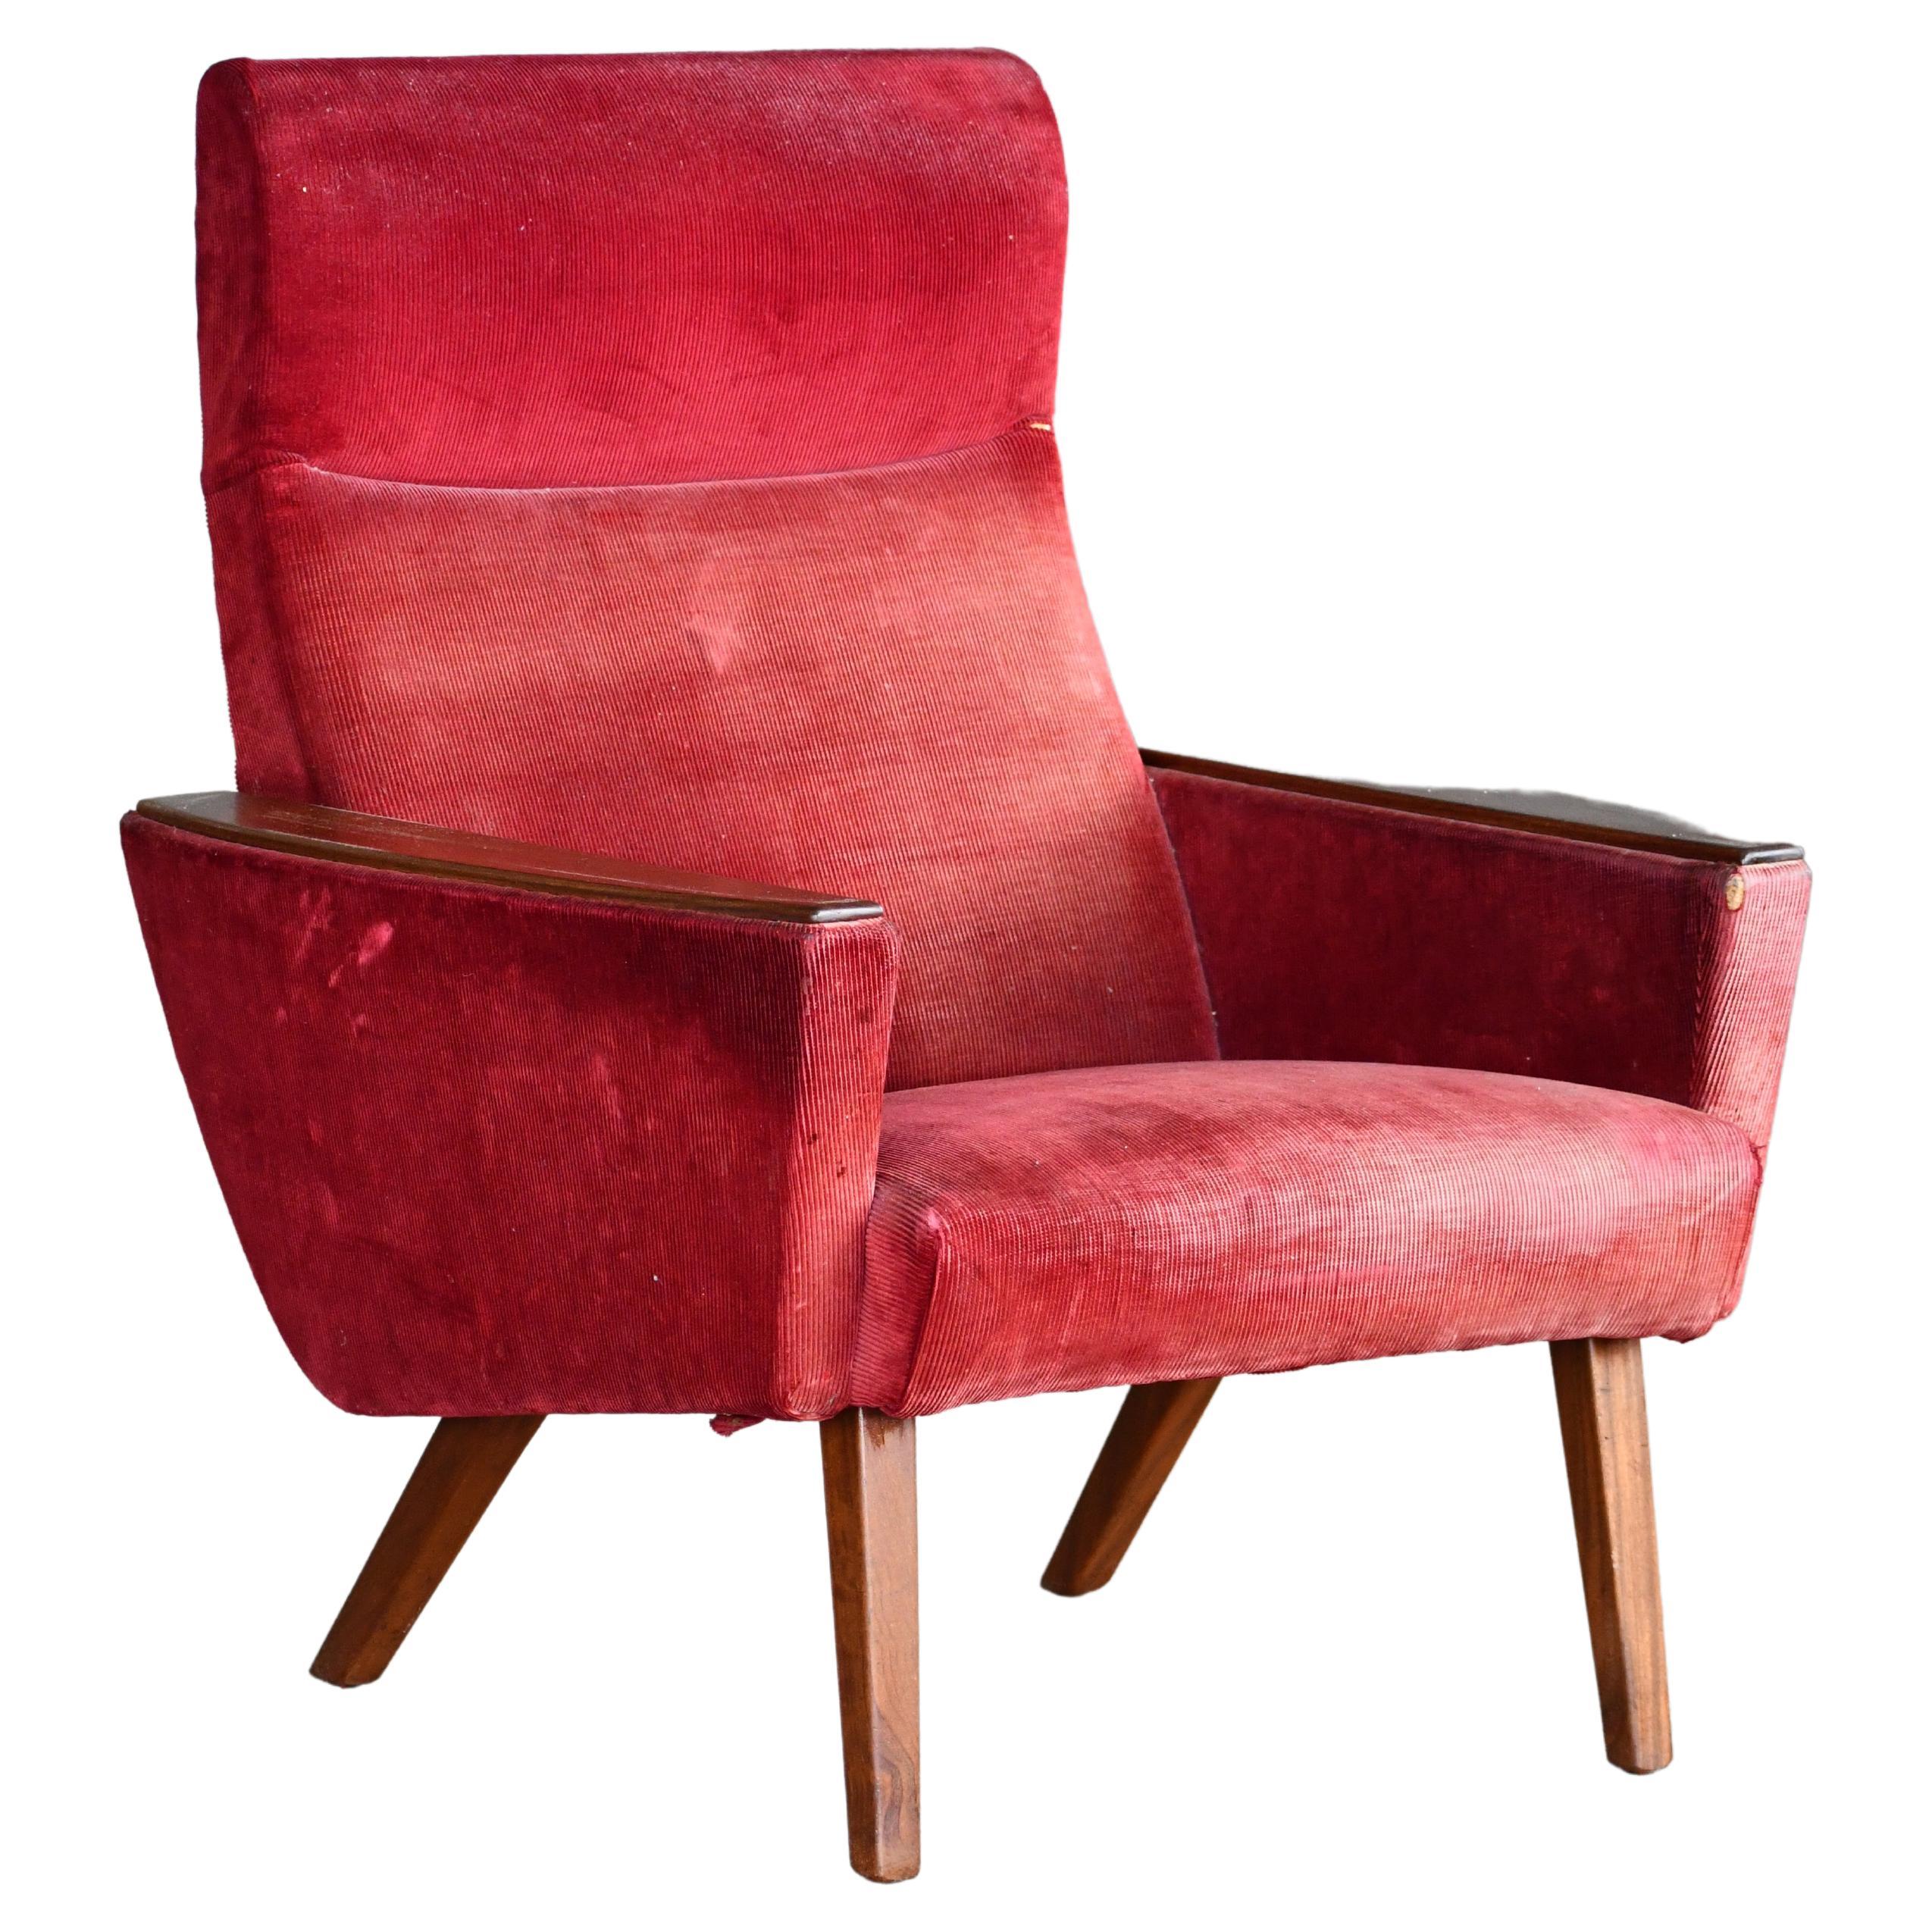 Charmanter klassischer dänischer Sessel aus den 1960er Jahren mit Armlehnen aus Teakholz, möglicherweise von Kurt Østervig für Ryesberg Mobler entworfen, aber wir sind uns nicht sicher, wer der Designer und Hersteller dieses Sessels ist. Der